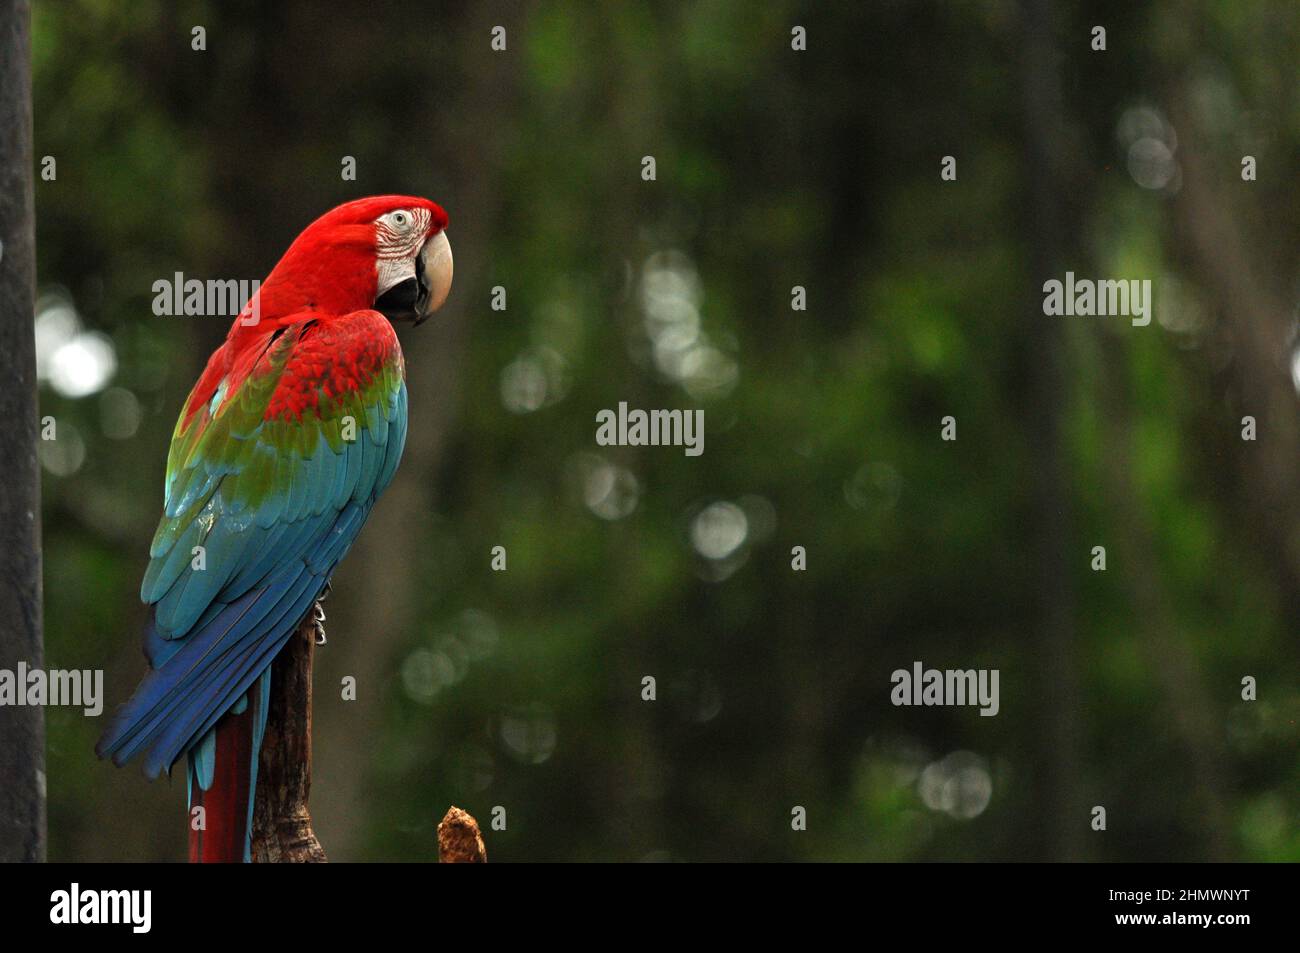 Macaw rouge et vert (Ara chloropterus) perchée sur une branche, prise à Parque das Aves, Brésil Banque D'Images